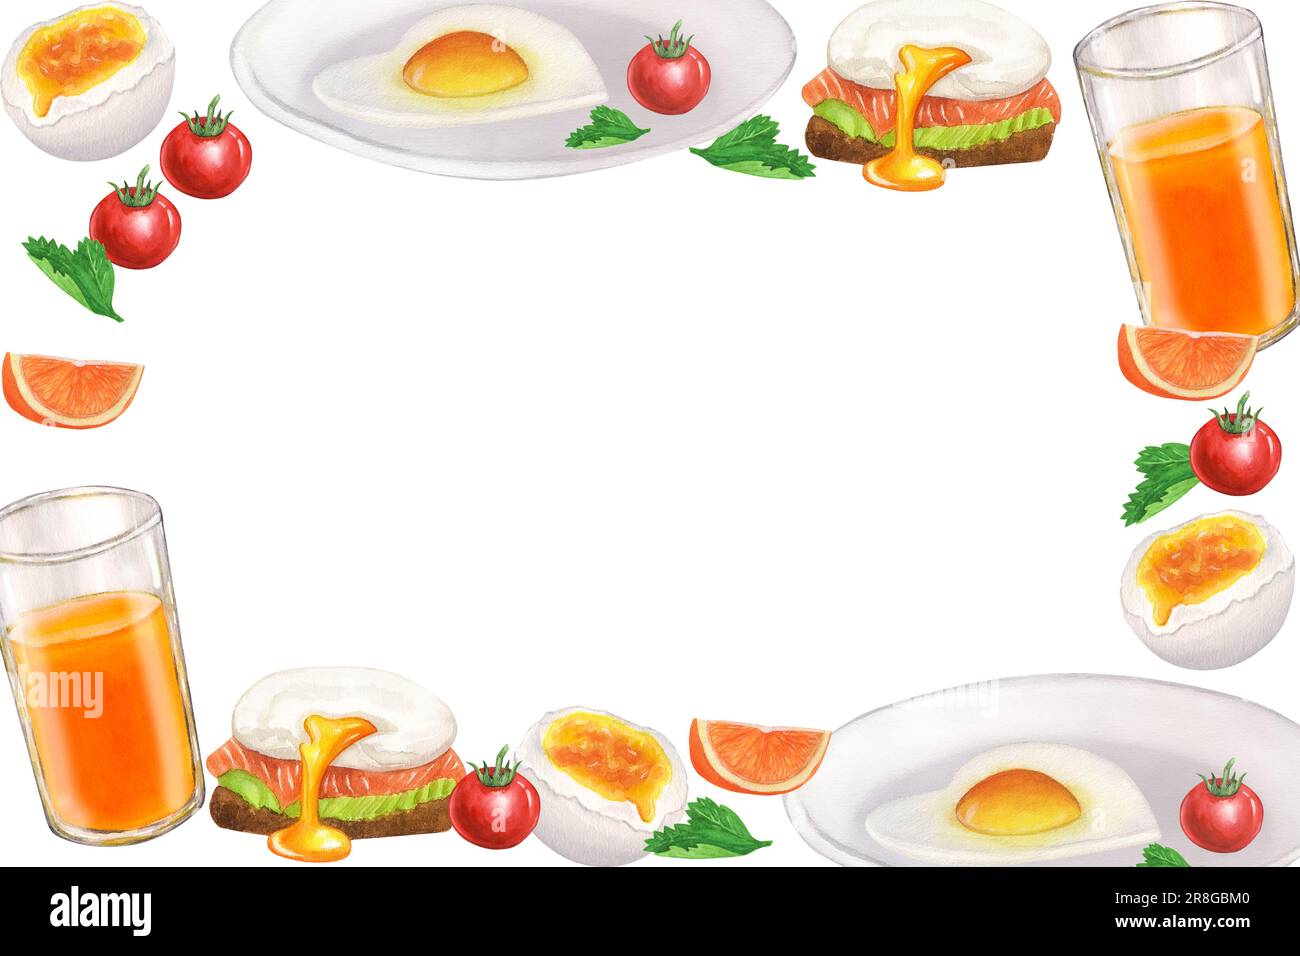 Bannière cadre de la collection de nourriture de petit déjeuner, les repas du matin oeufs frits, jus, orange, tomate, persil, poché. Illustration aquarelle dessinée à la main isolée Banque D'Images